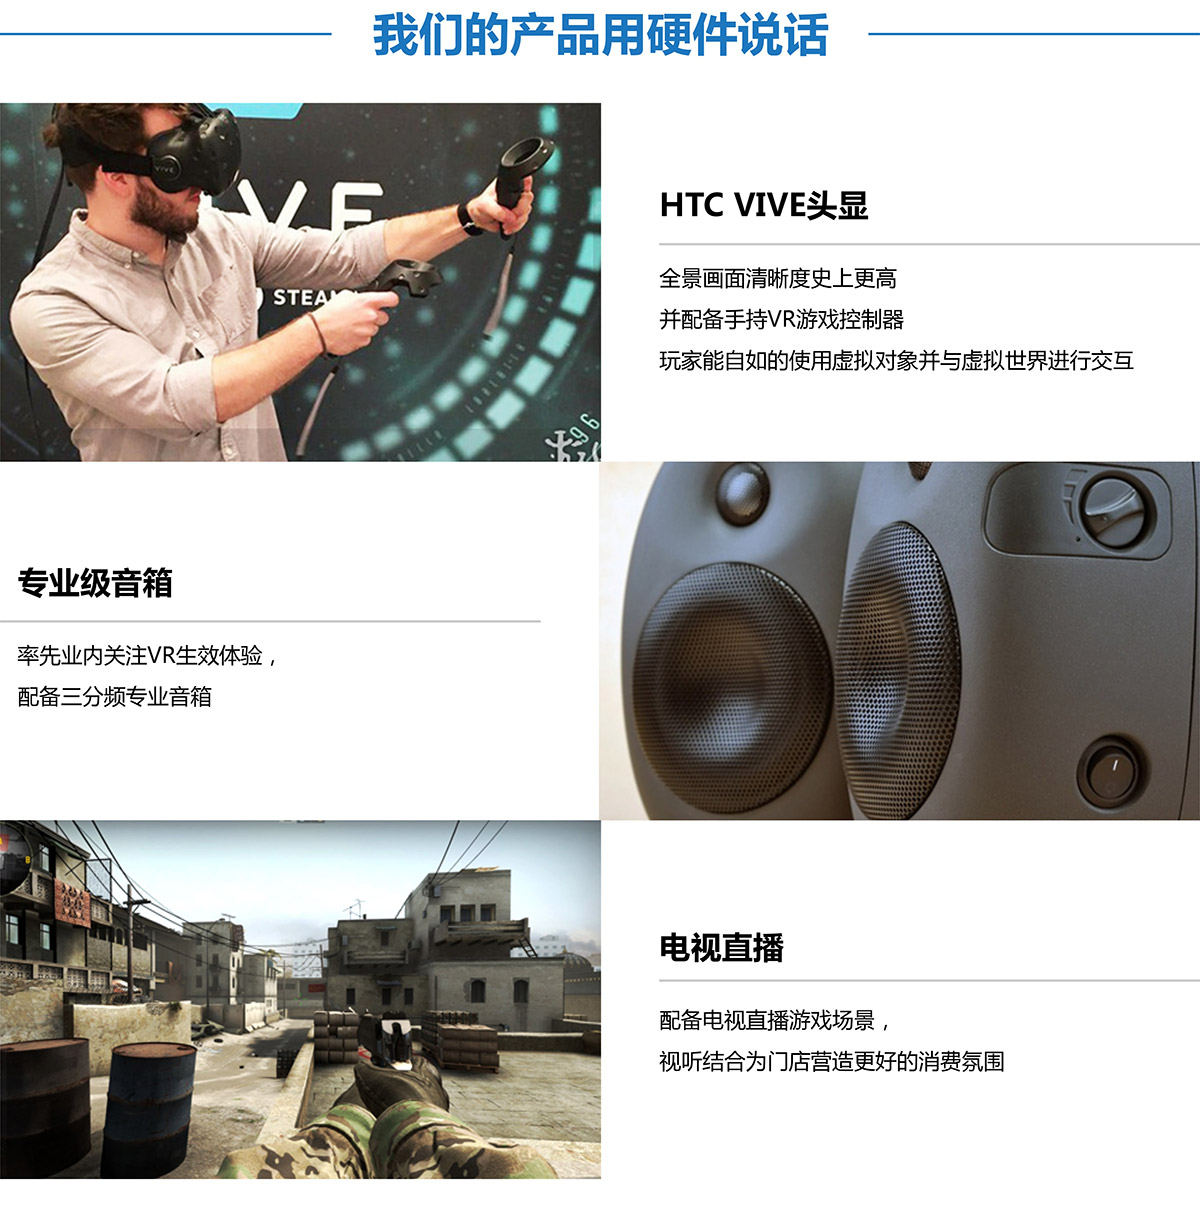 地震VR探索用硬件说话.jpg